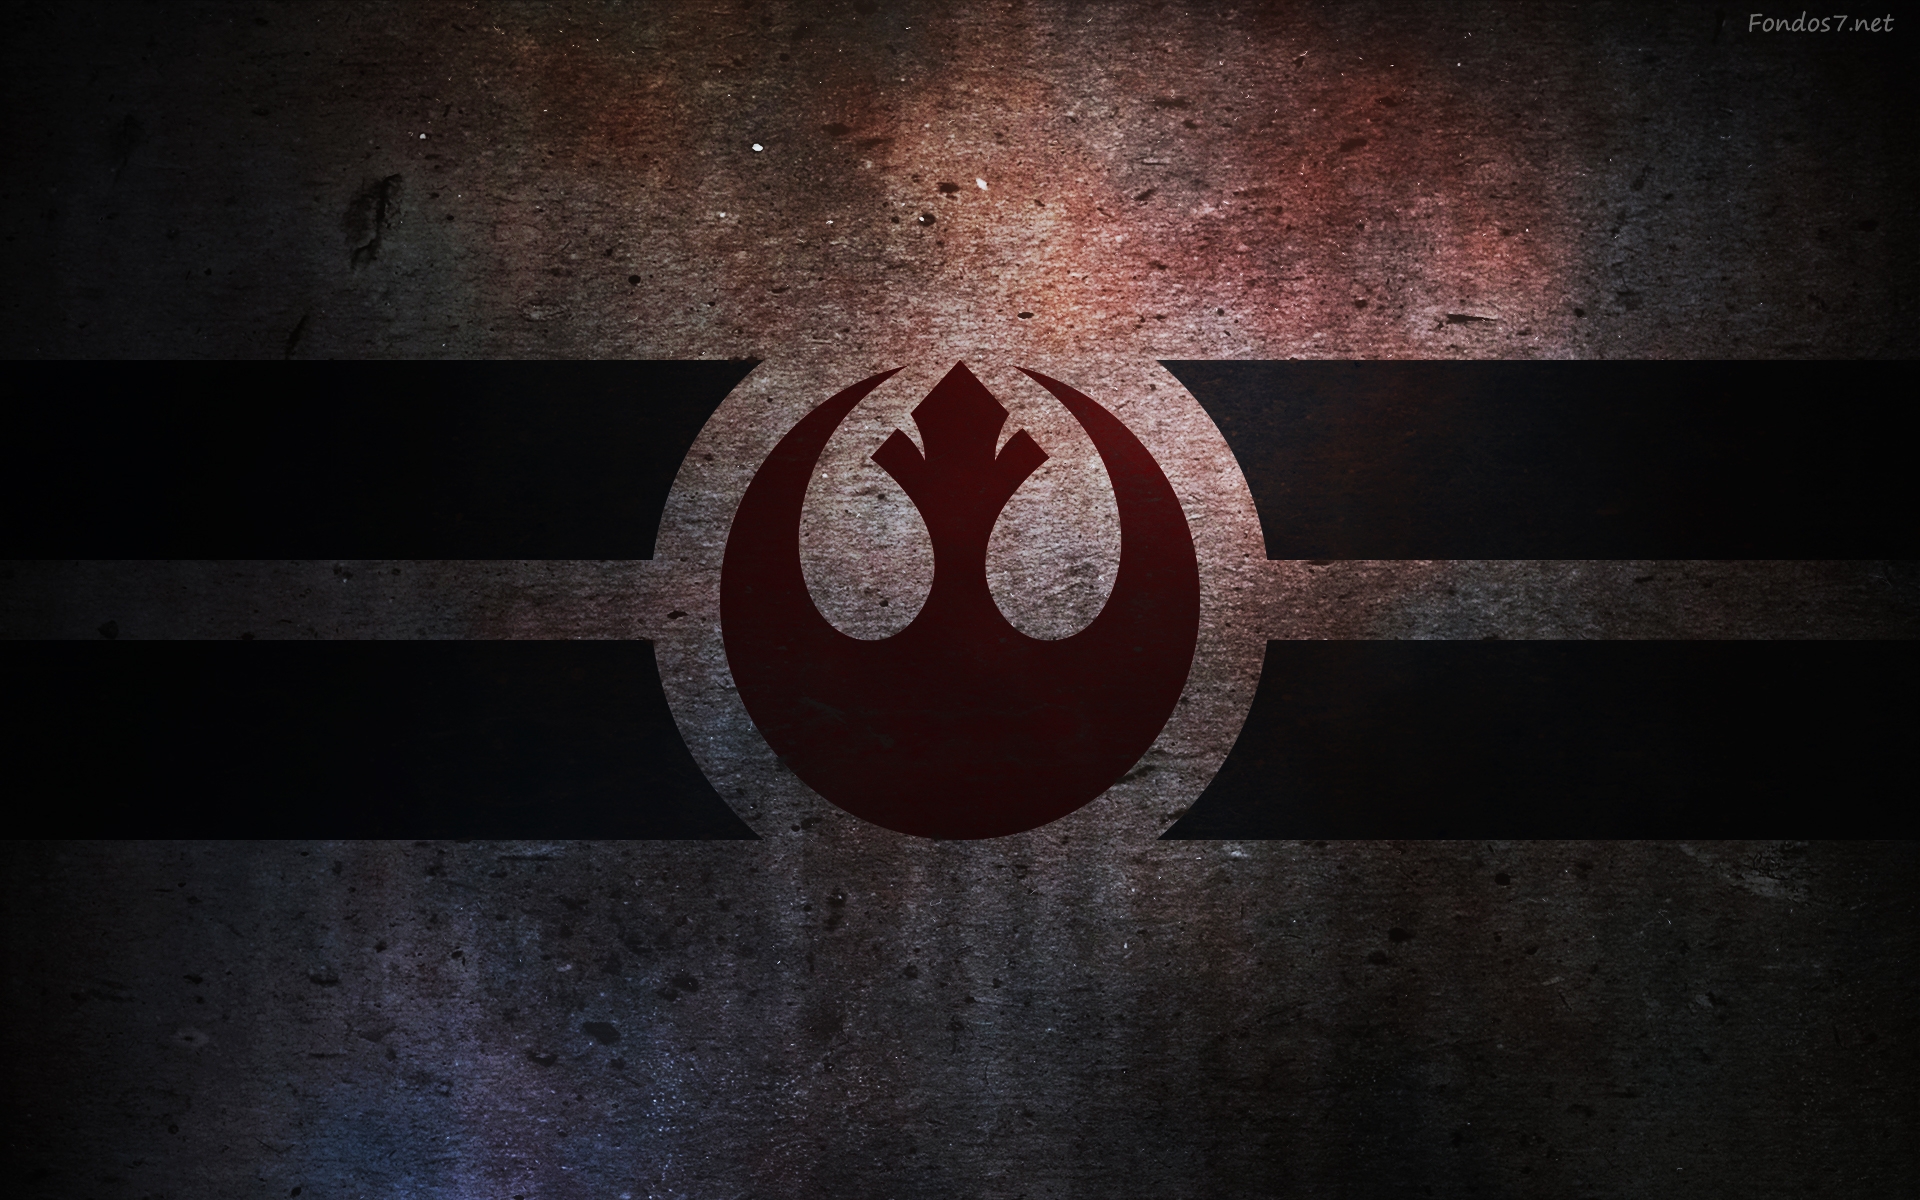 Star Wars Logo Wallpaper Widescreen Original